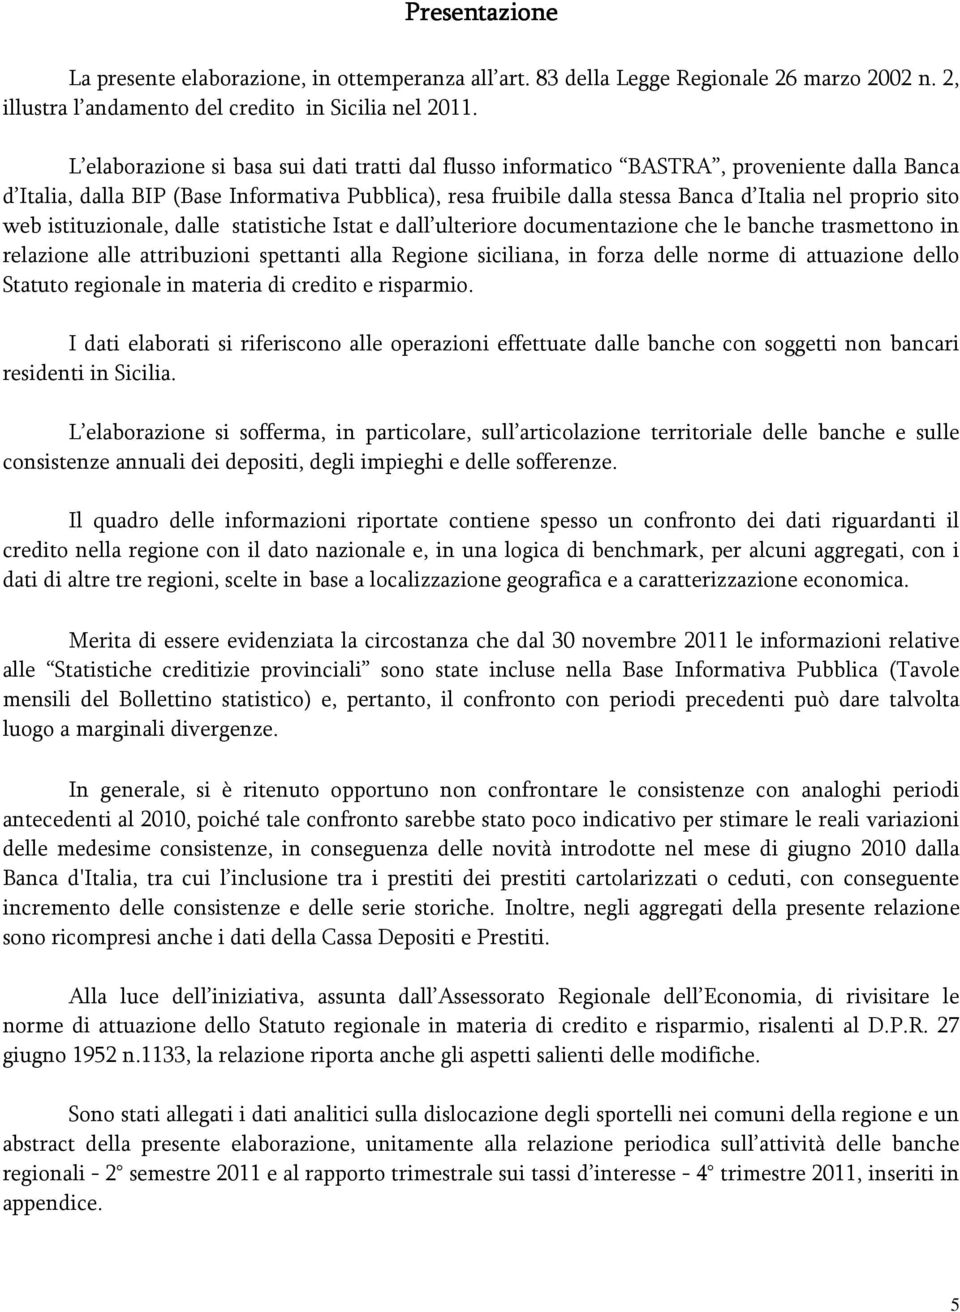 sito web istituzionale, dalle statistiche Istat e dall ulteriore documentazione che le banche trasmettono in relazione alle attribuzioni spettanti alla Regione siciliana, in forza delle norme di